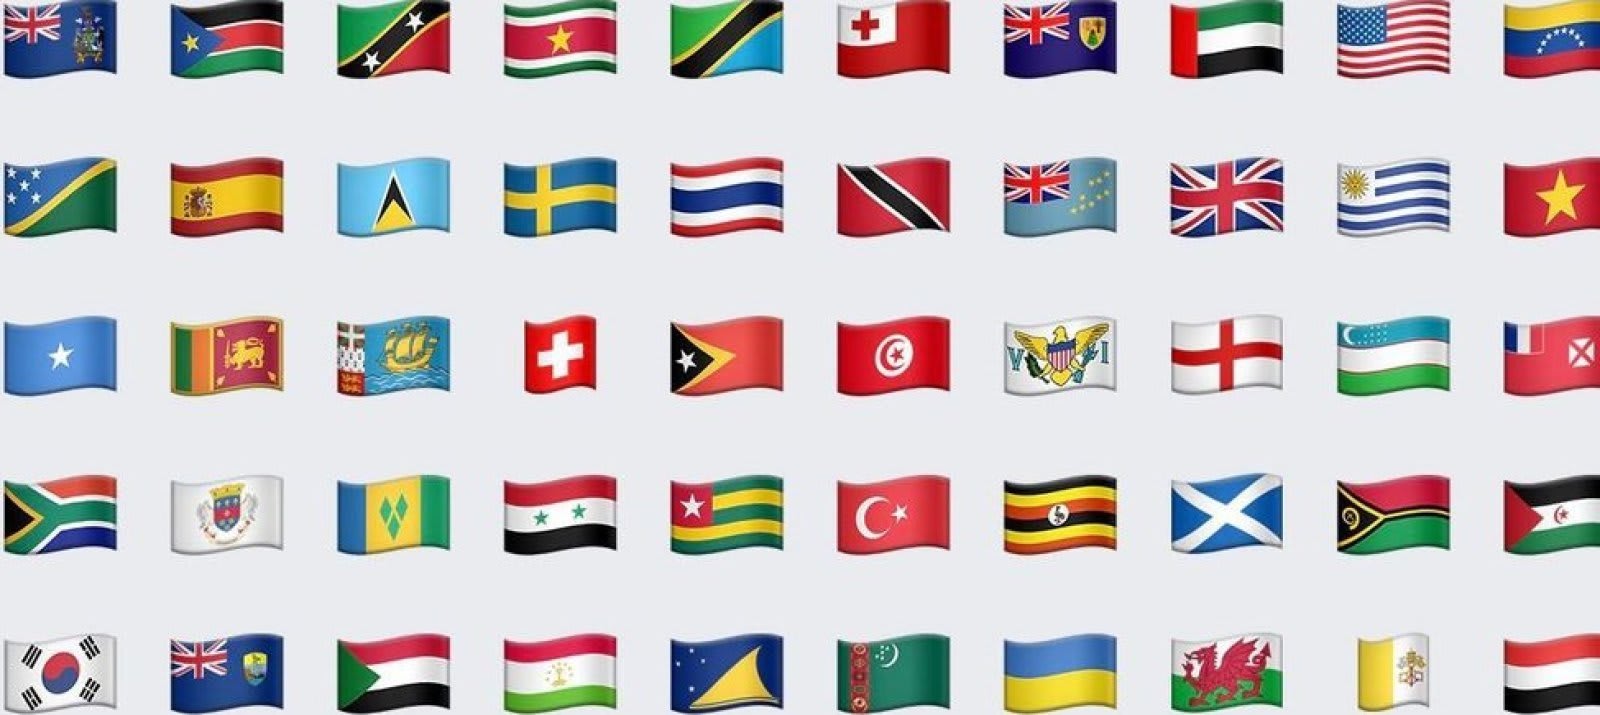 アップル 香港向けiphoneから台湾国旗の絵文字を削除 中国政府への配慮か Engadget 日本版